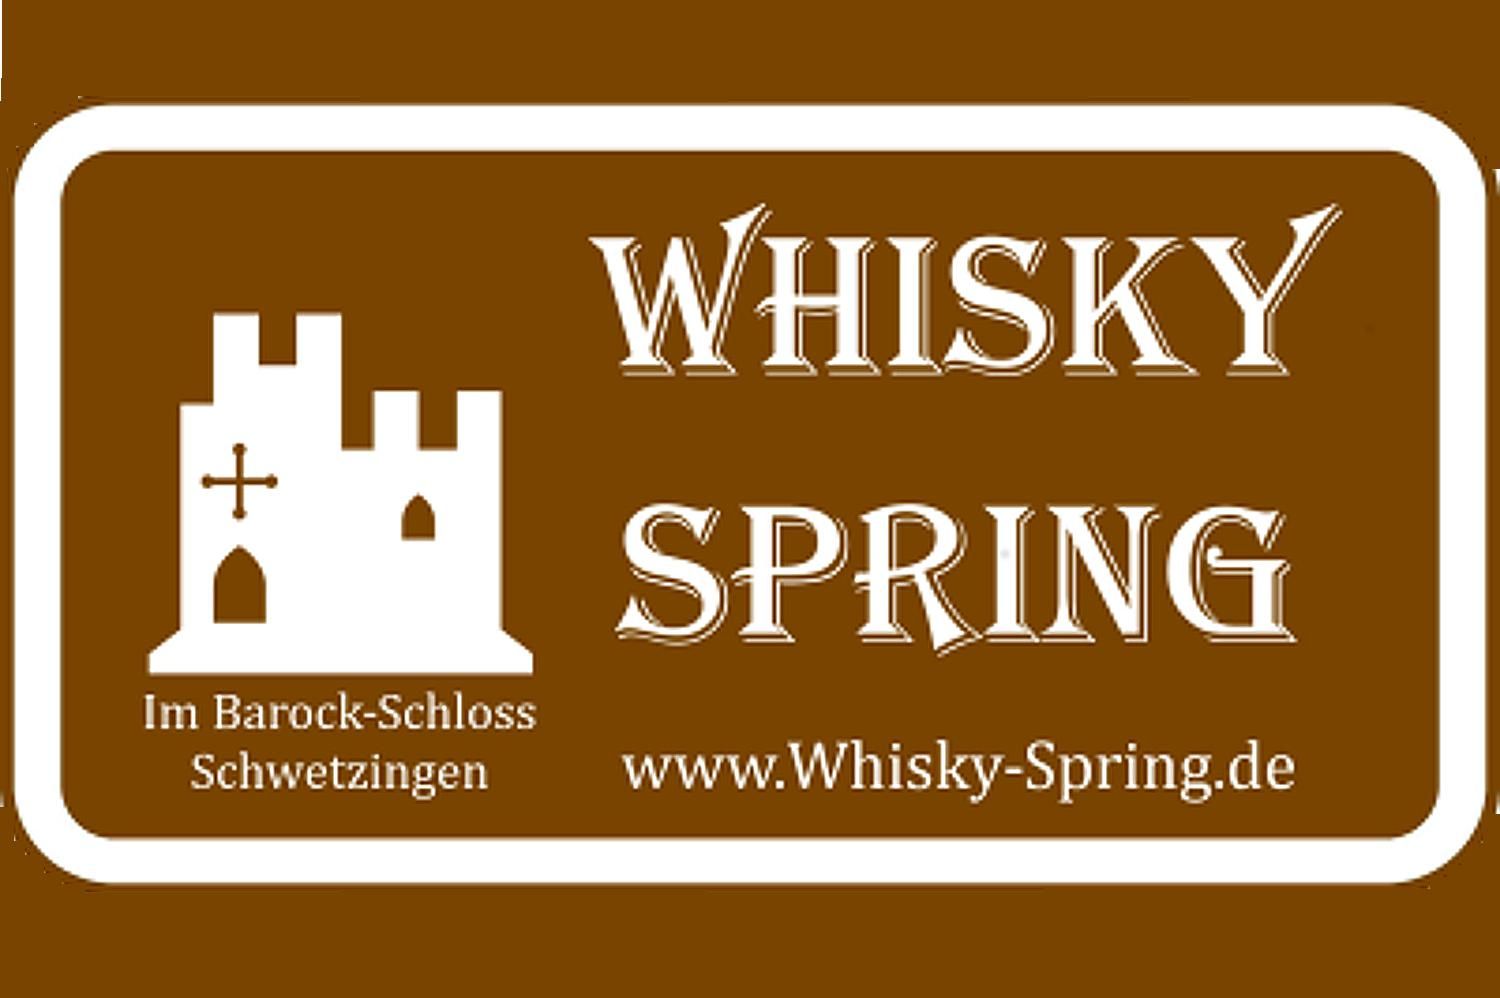 Veranstaltungslogo der Messe "Whisky Spring"